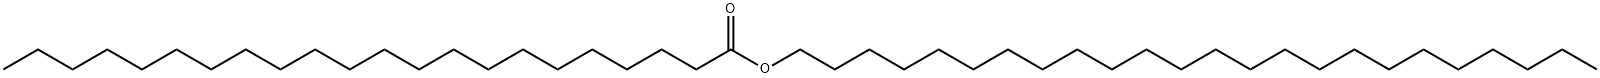 42233-17-0 Docosanoic acid tetracosyl ester